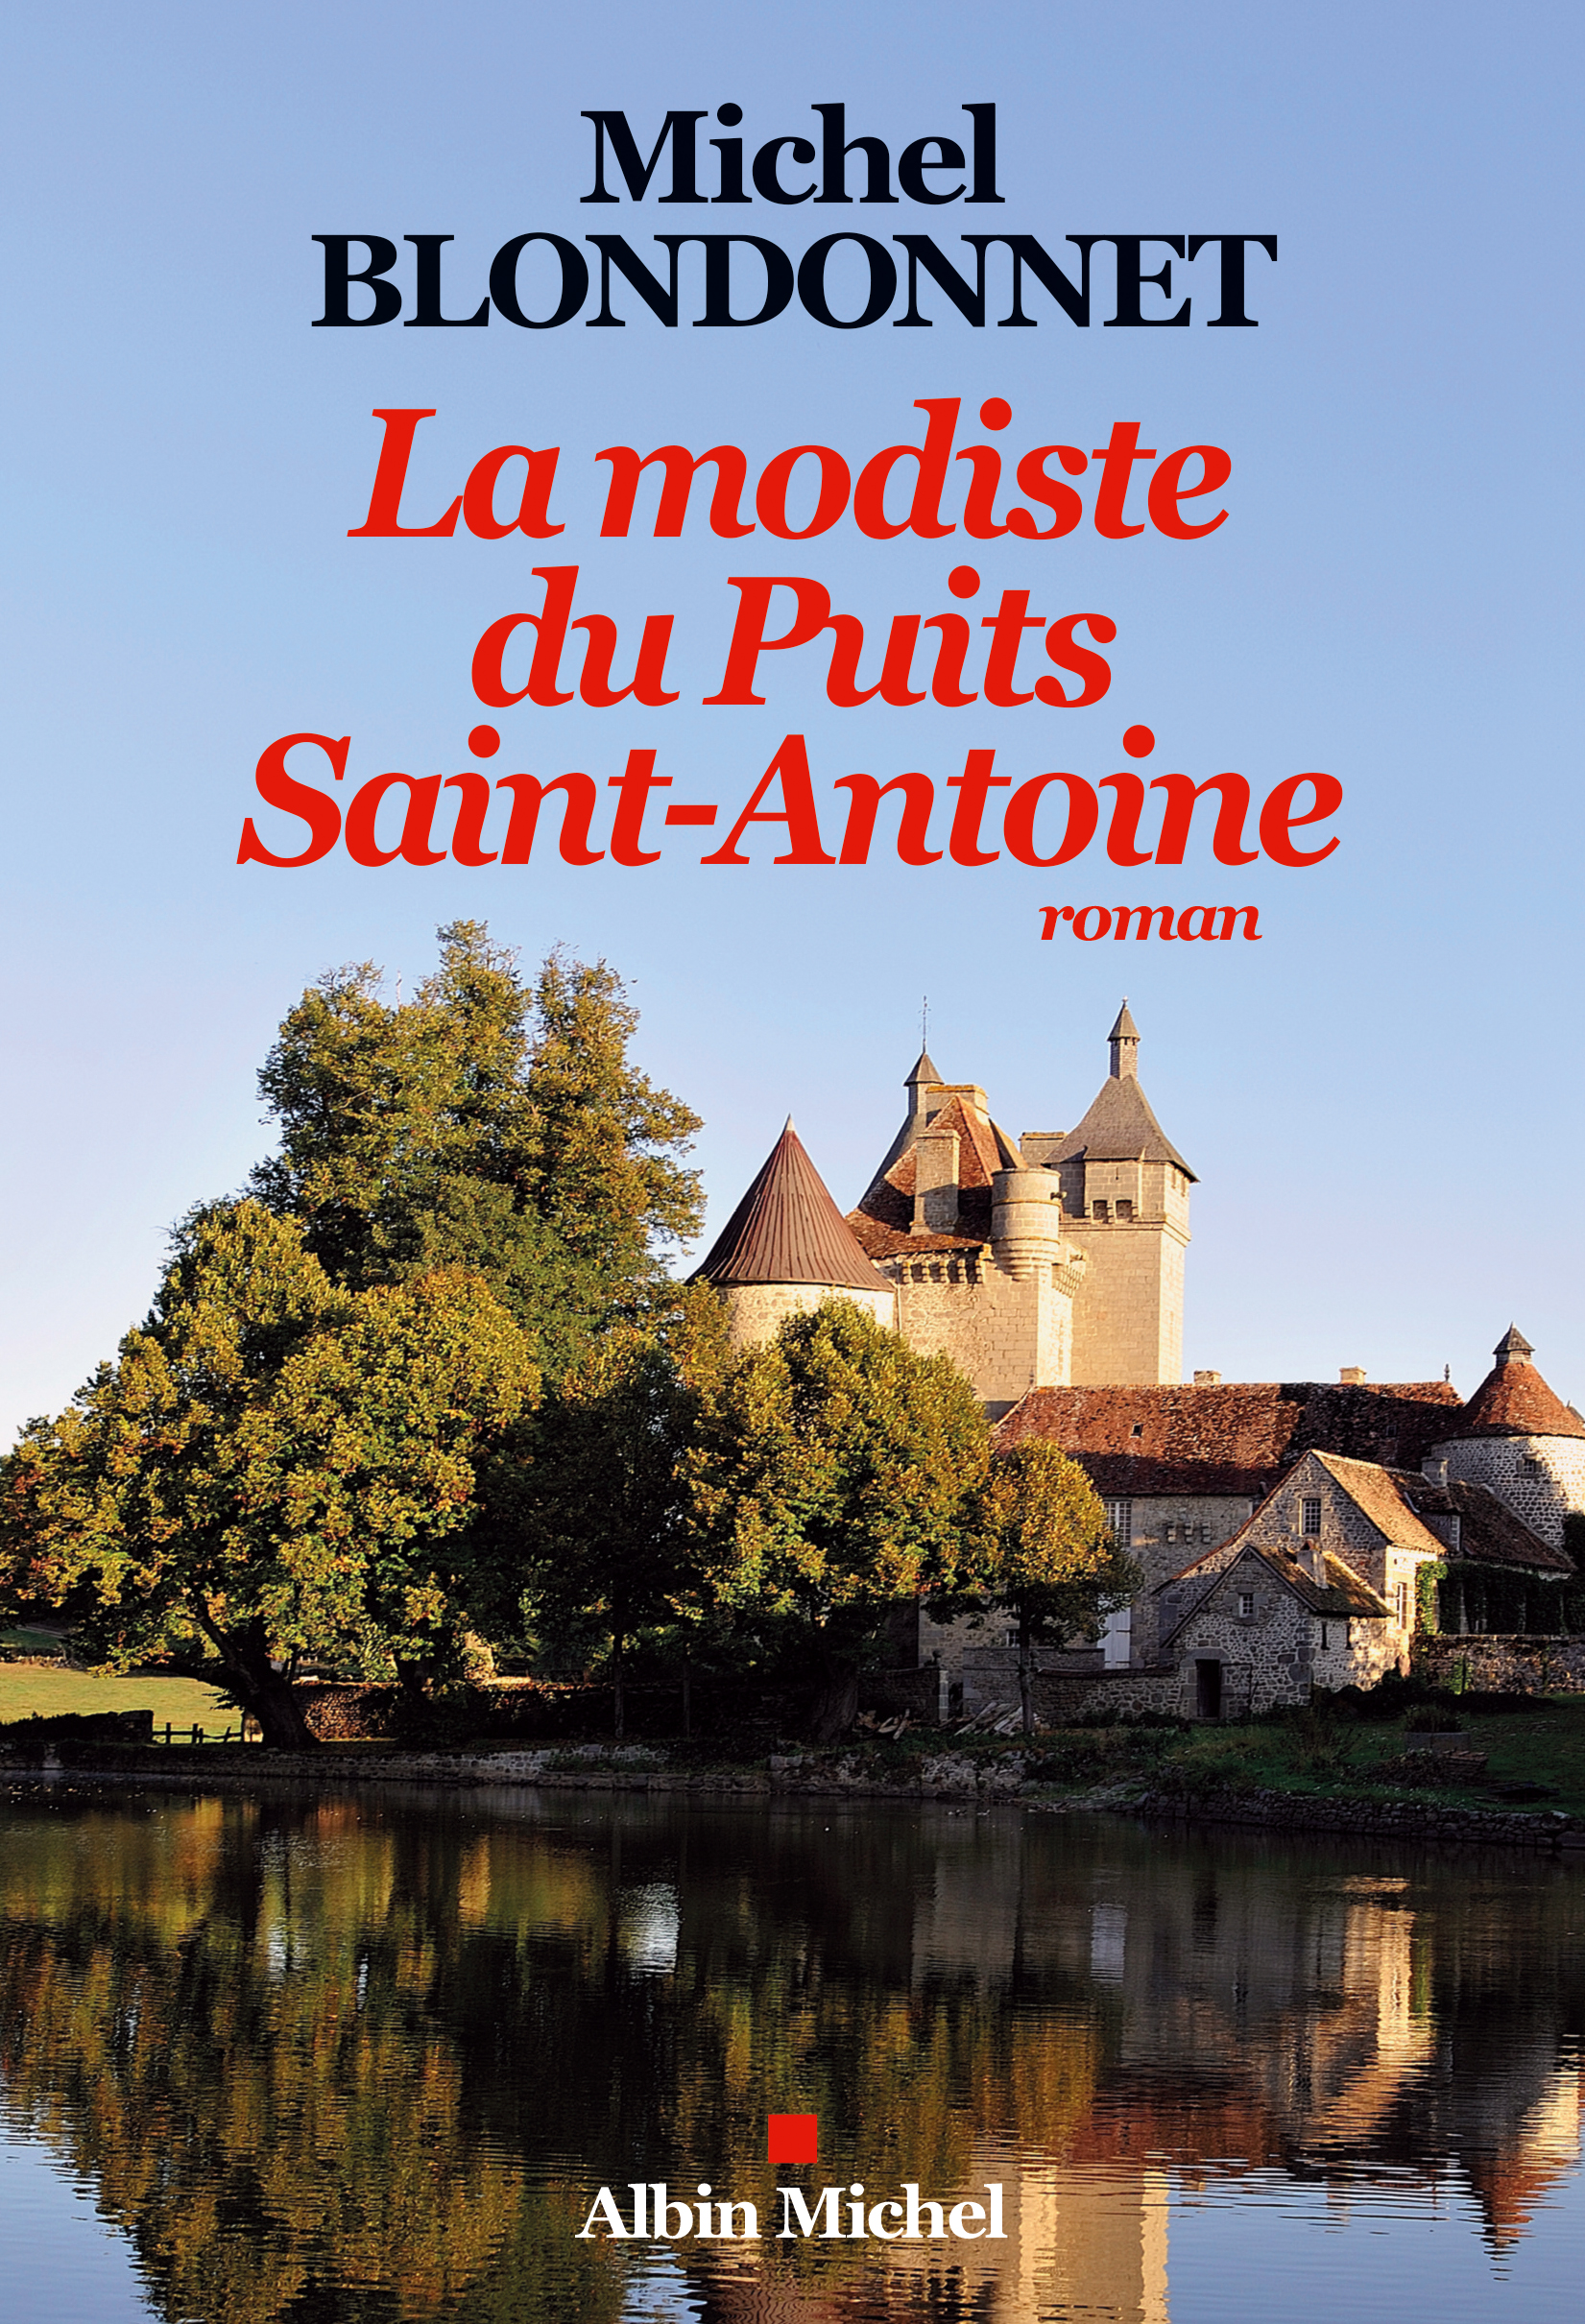 Couverture du livre La Modiste du puits Saint-Antoine